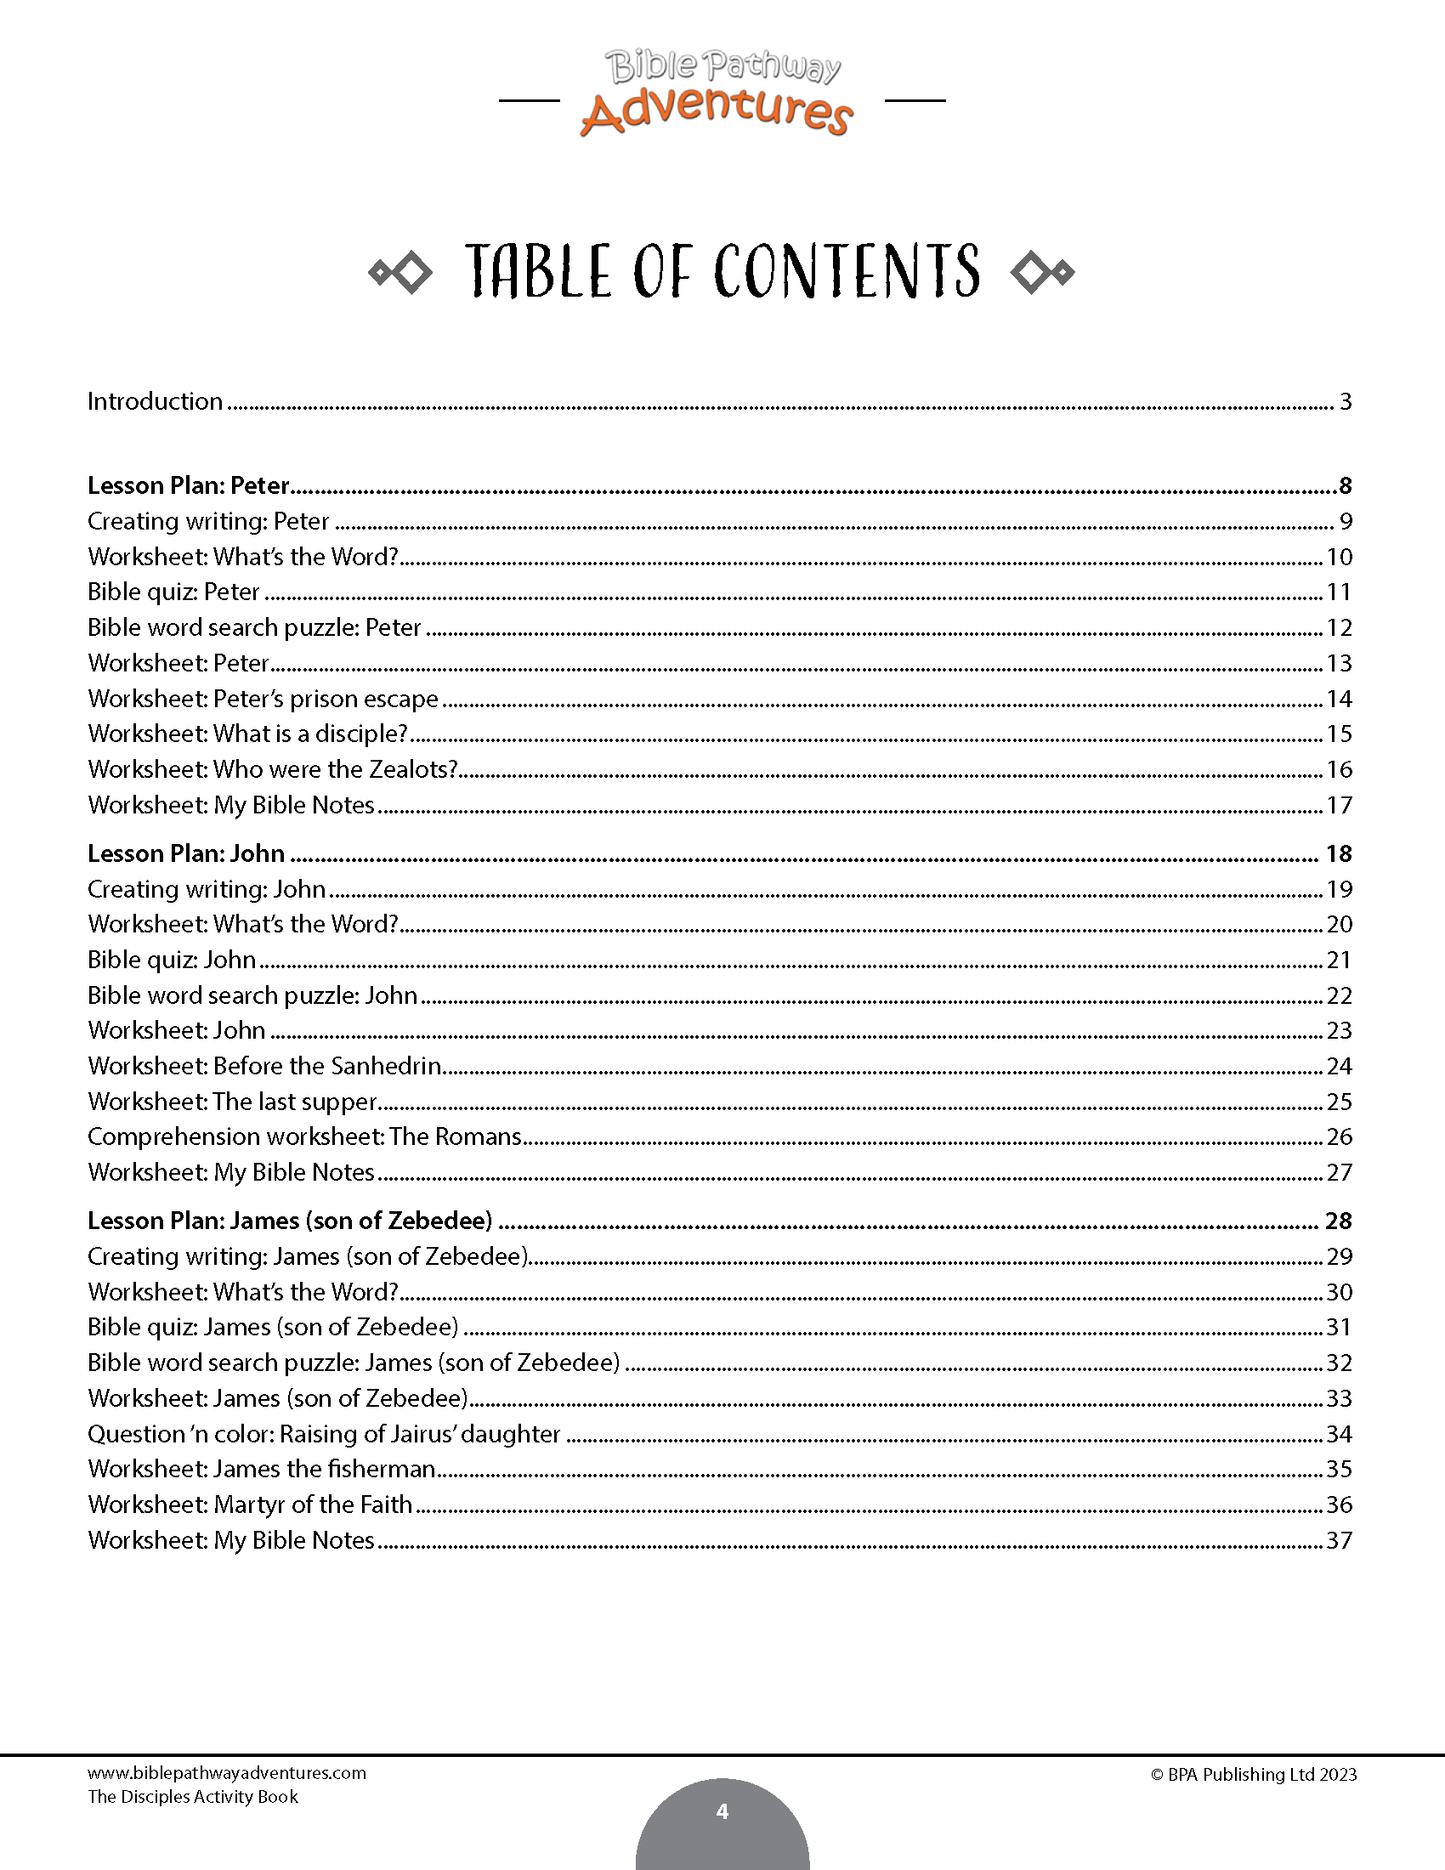 El libro de actividades de los discípulos